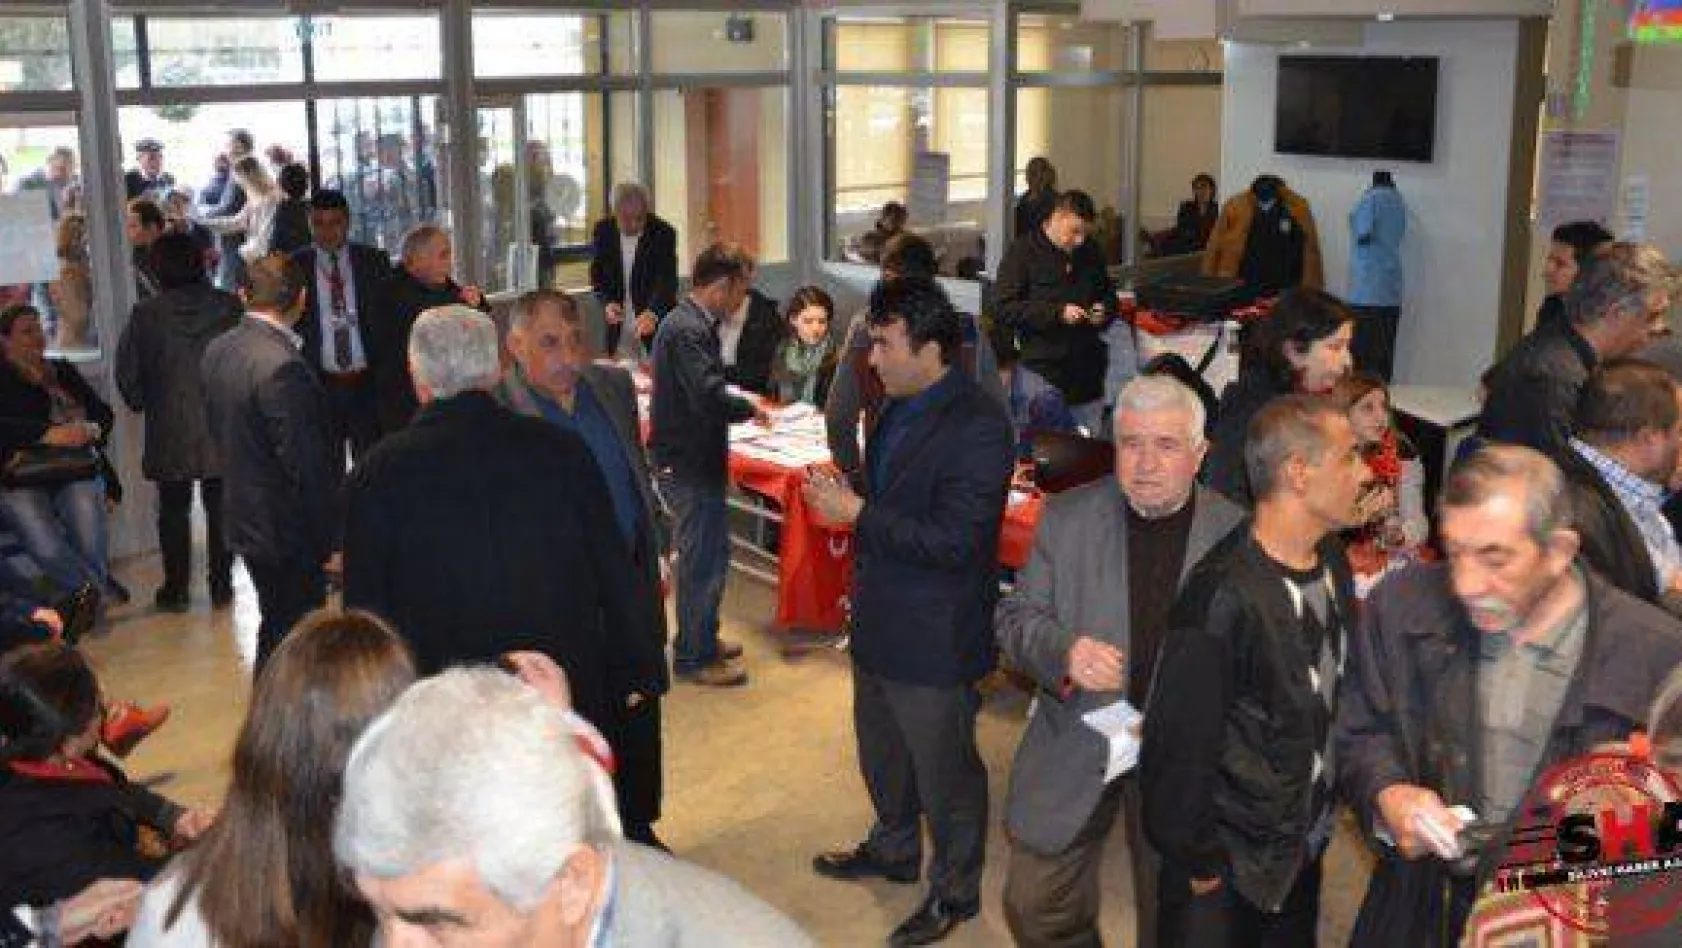 CHP'de ön seçim heyecanı